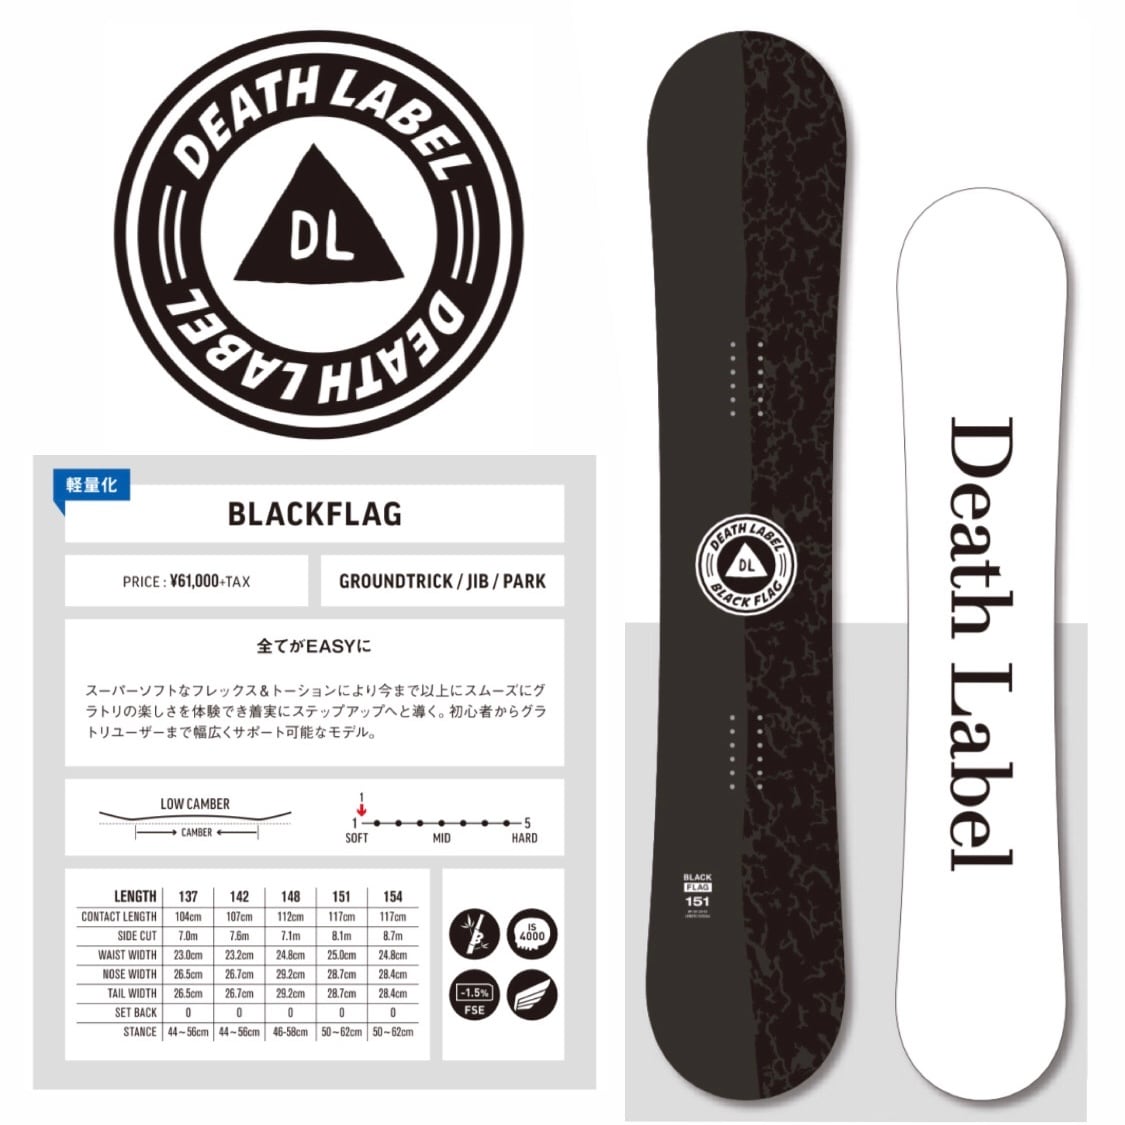 デスレーベル 142 DEATHLABEL BLACKFLAG - ボード